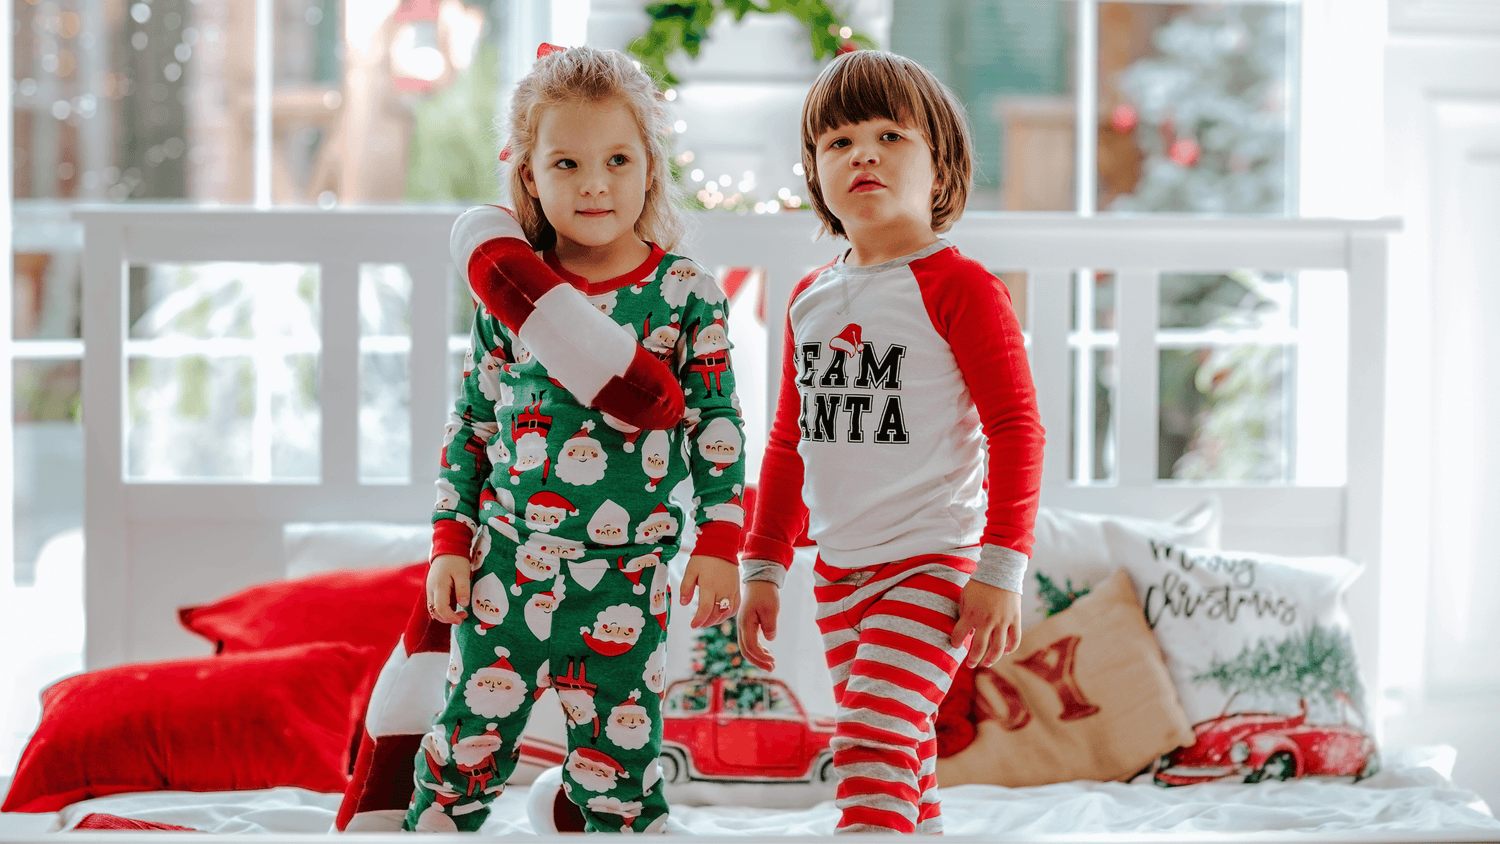 Christmas Pyjamas